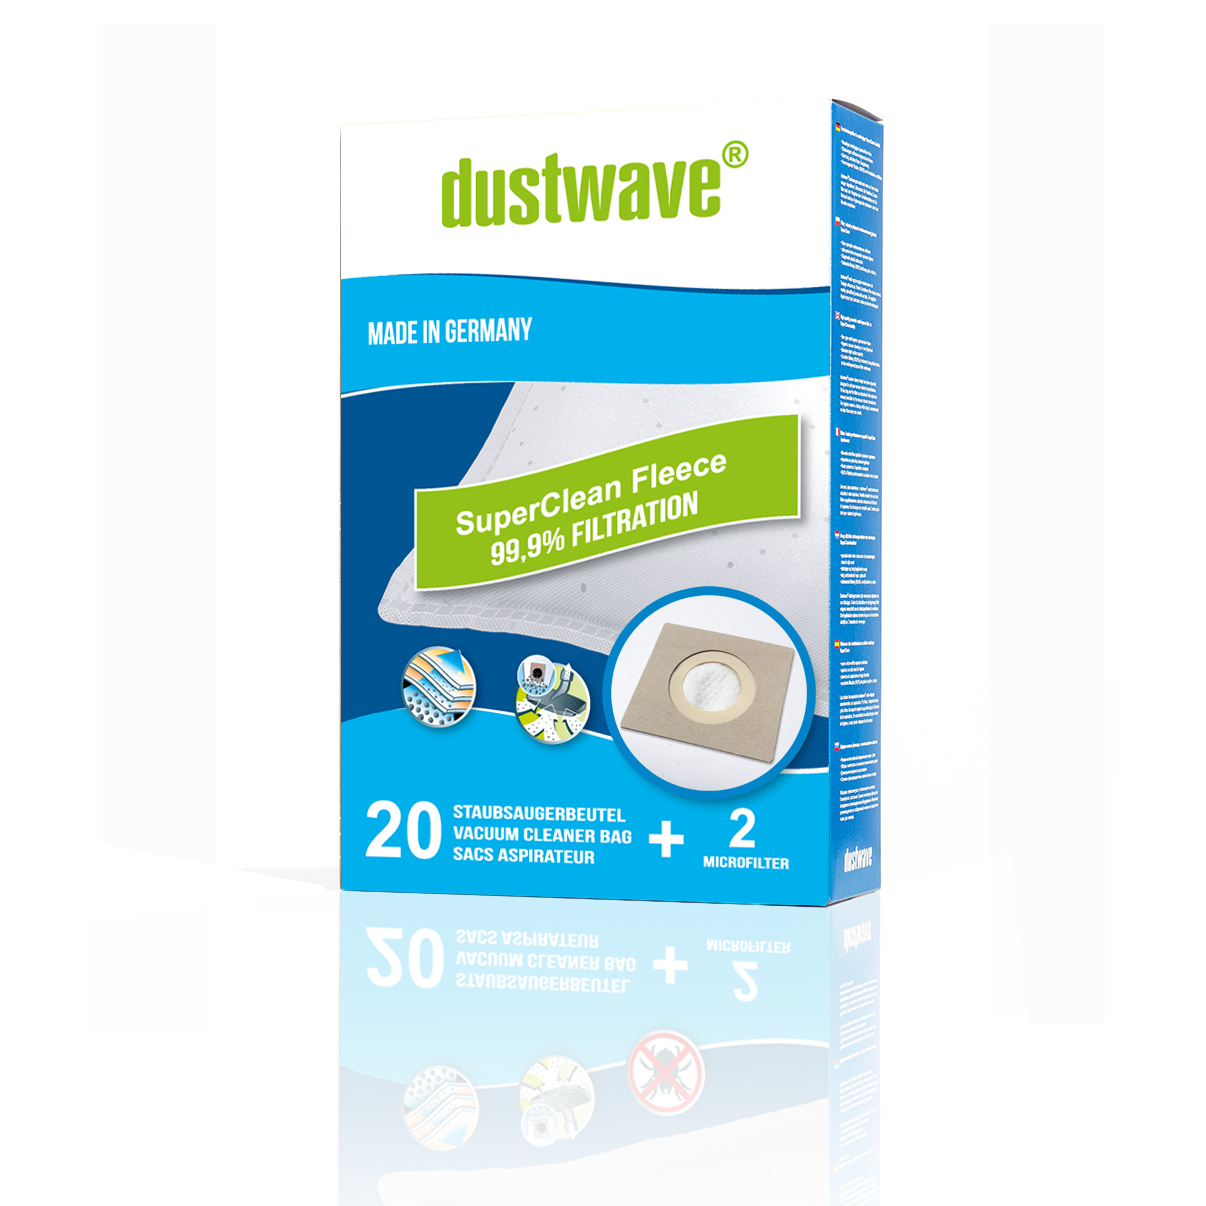 Dustwave® Premium 20 Staubsaugerbeutel für Hoover TX1600 020 Telios Extra - hocheffizient, mehrlagiges Mikrovlies mit Hygieneverschluss - Made in Germany